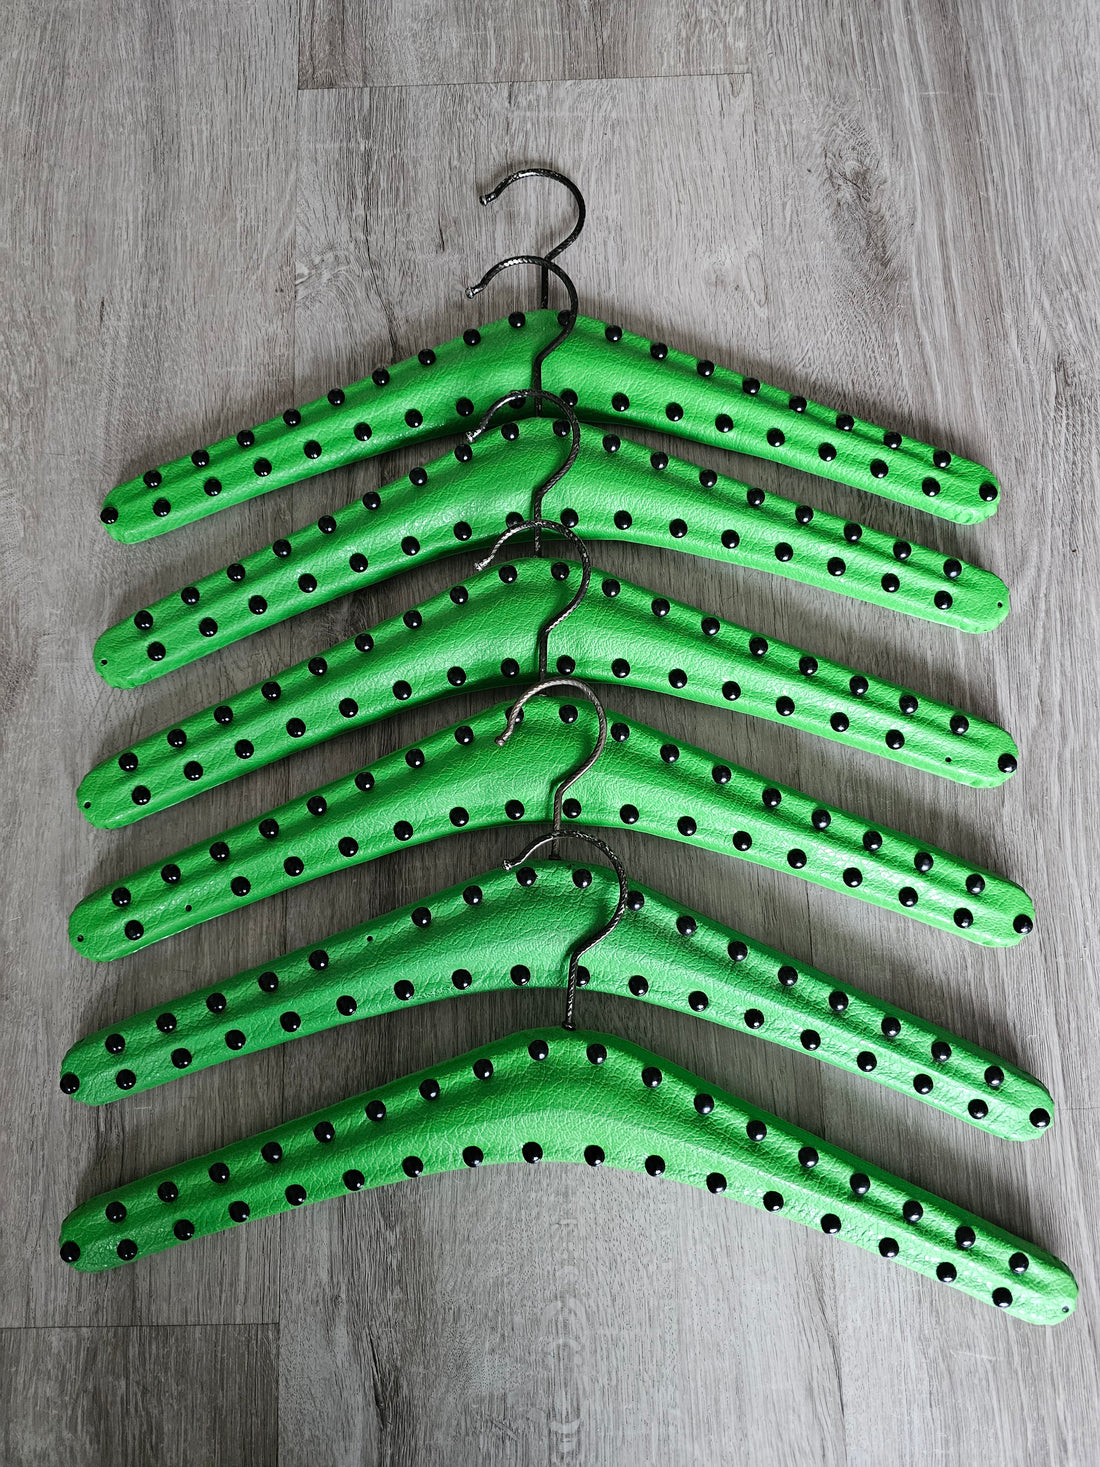 Groene skailederen kledinghangers 6x